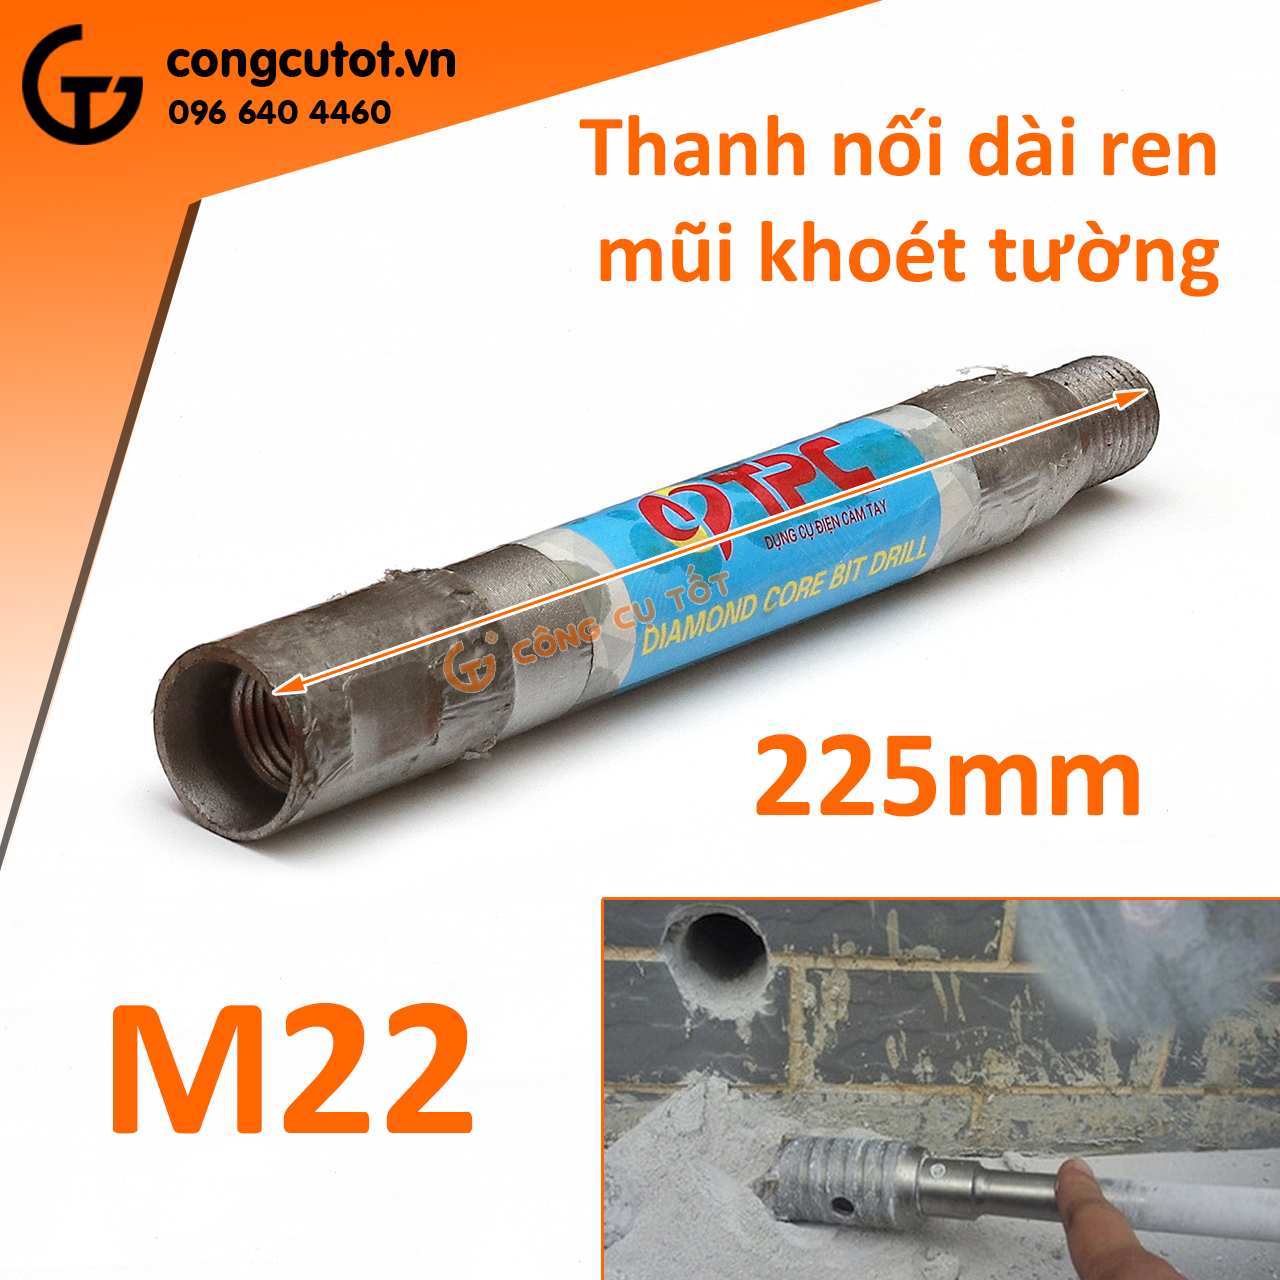 Thanh nối dài ren M22 225mm.